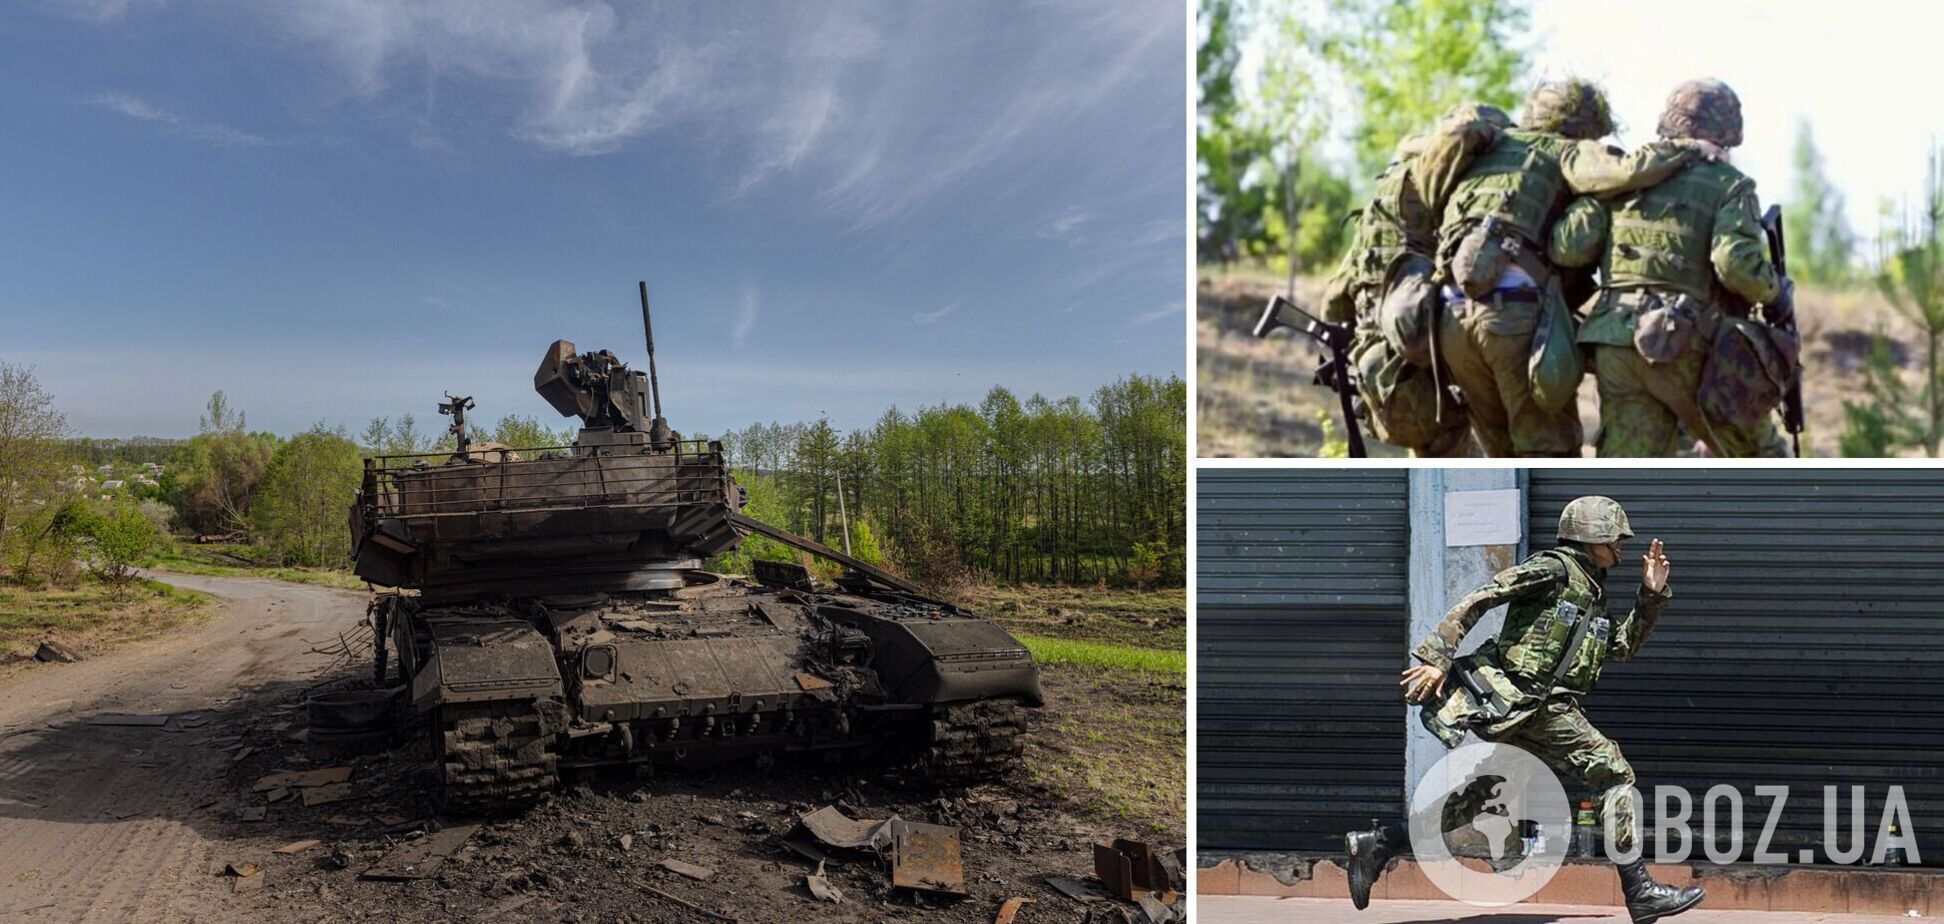 Военные РФ всех уровней дезертируют и отказываются участвовать в войне против Украины – Пентагон